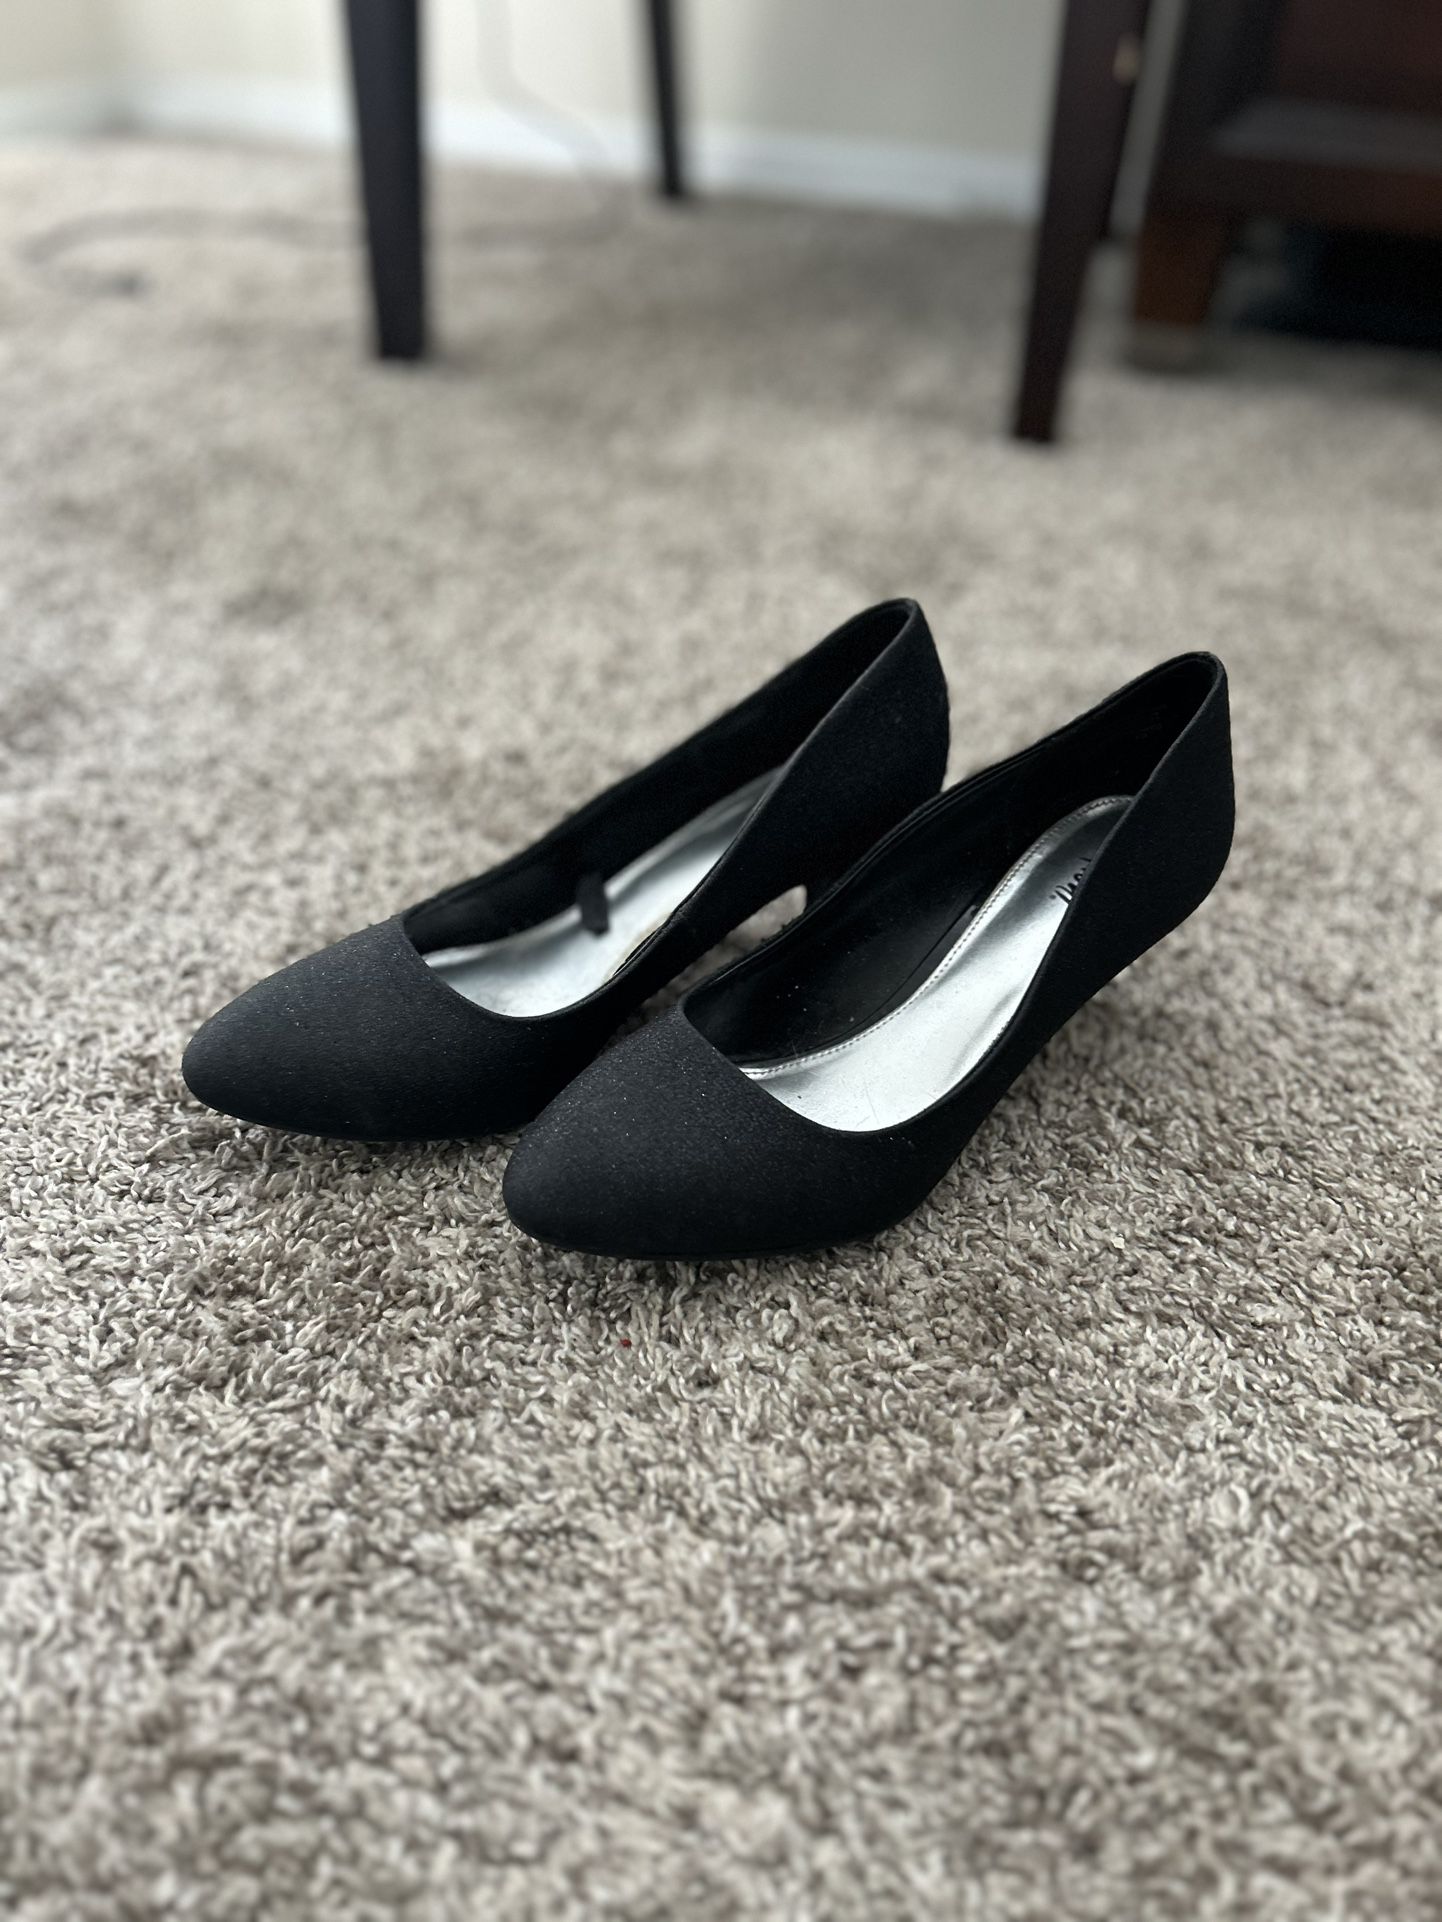 Sparkle Black, Short Heels